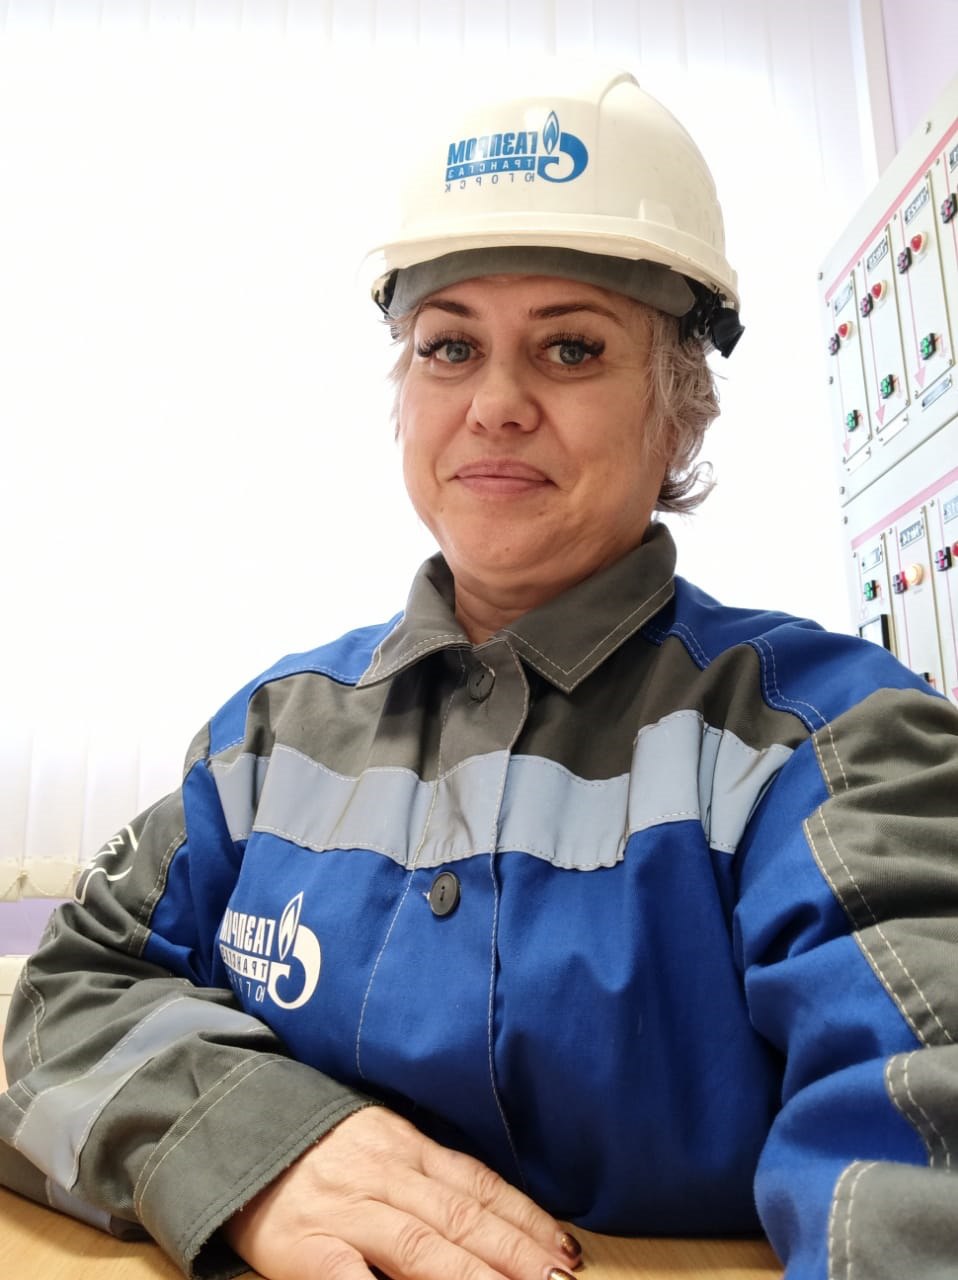 Производственный стаж Натальи Васиной – тридцать четыре года, работа посменная, на которую она всегда едет с радостью, ведь именно «Газпром» в сложные девяностые дал ей ощущение стабильности и уверенности в завтрашнем дне